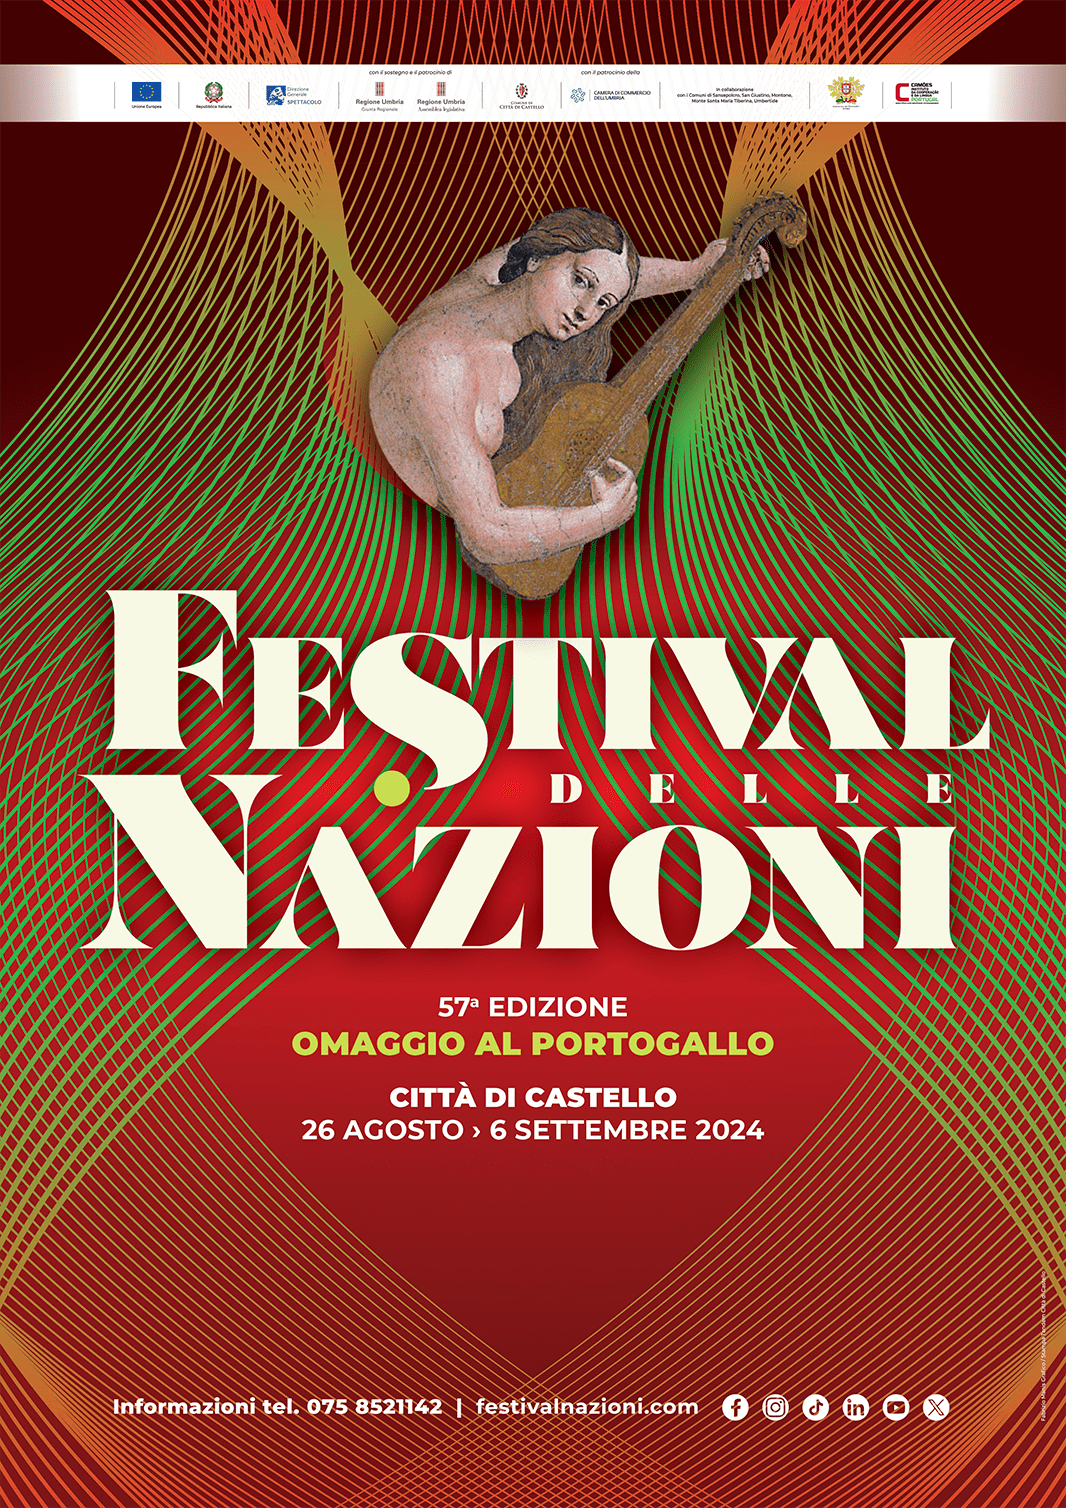 57° Festival delle Nazioni – Omaggio al Portogallo (26 Agosto – 6 Settembre 2024) Città di Castello